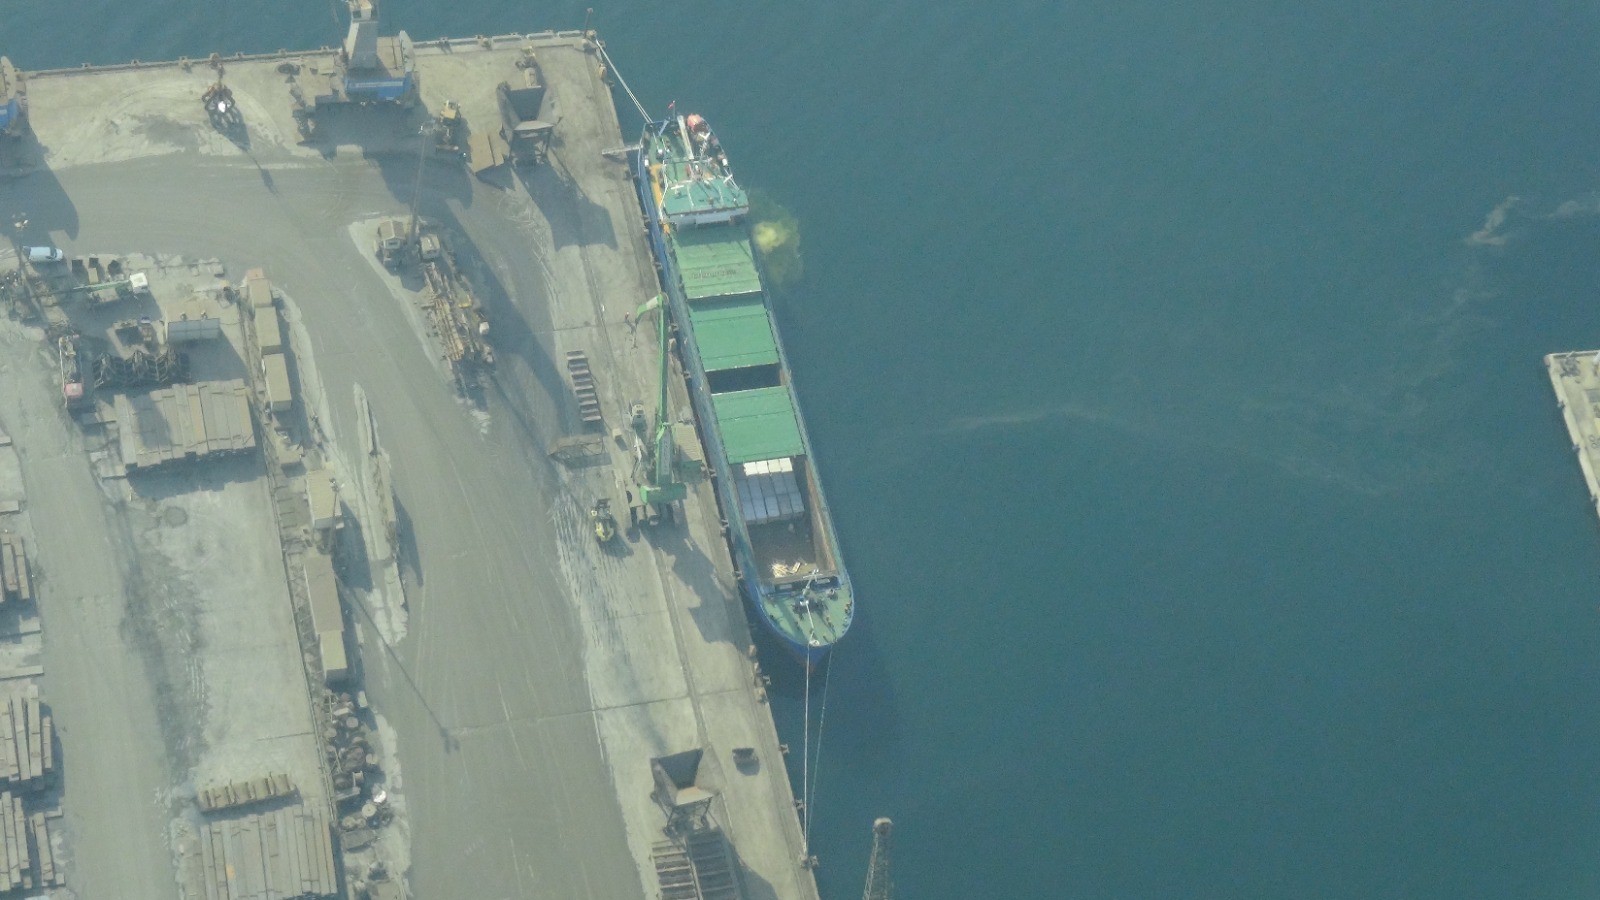 Denizi kirleten gemiye 3 milyon 550 bin lira par4a cezası!